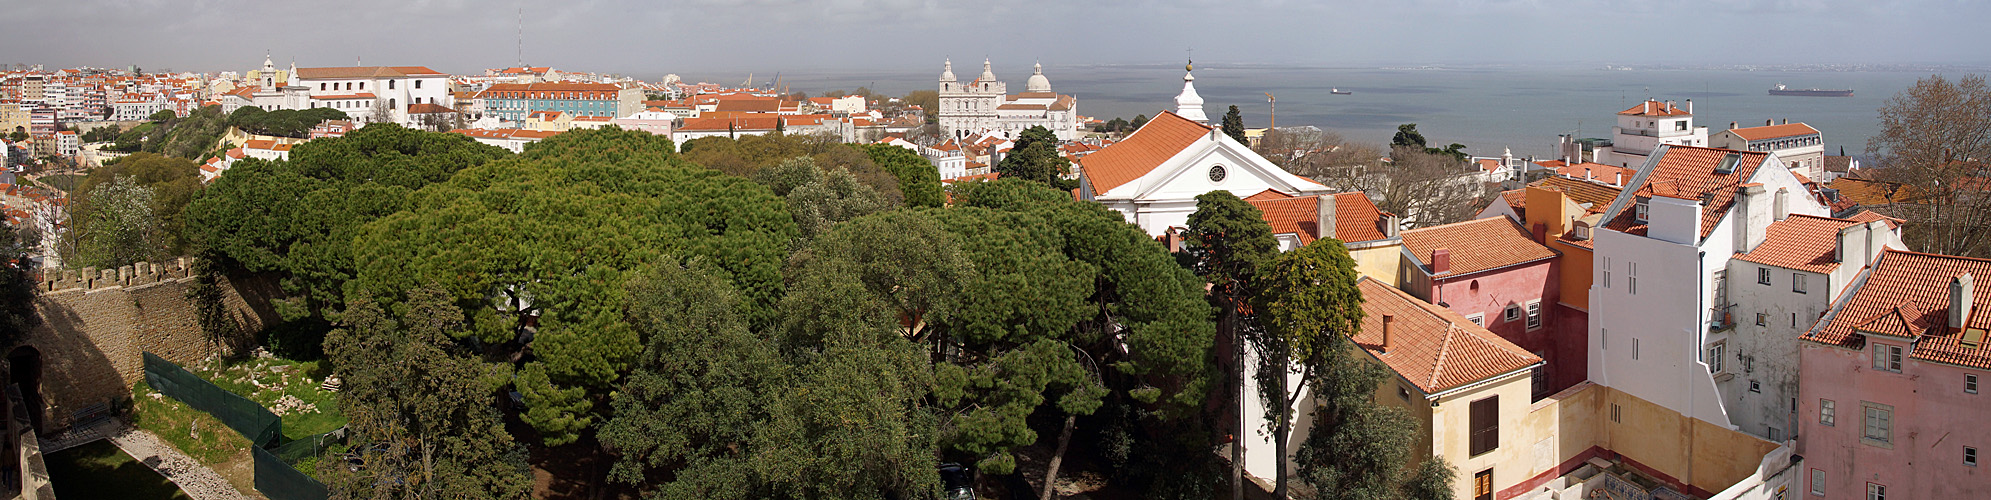 Photo panoramique du couvent [q]Nossa Senhora de Graça[q], du monastère de [q]Sao Vicente de Fora[q] et de léglise [q]Santa Cruz do Castelo[q]